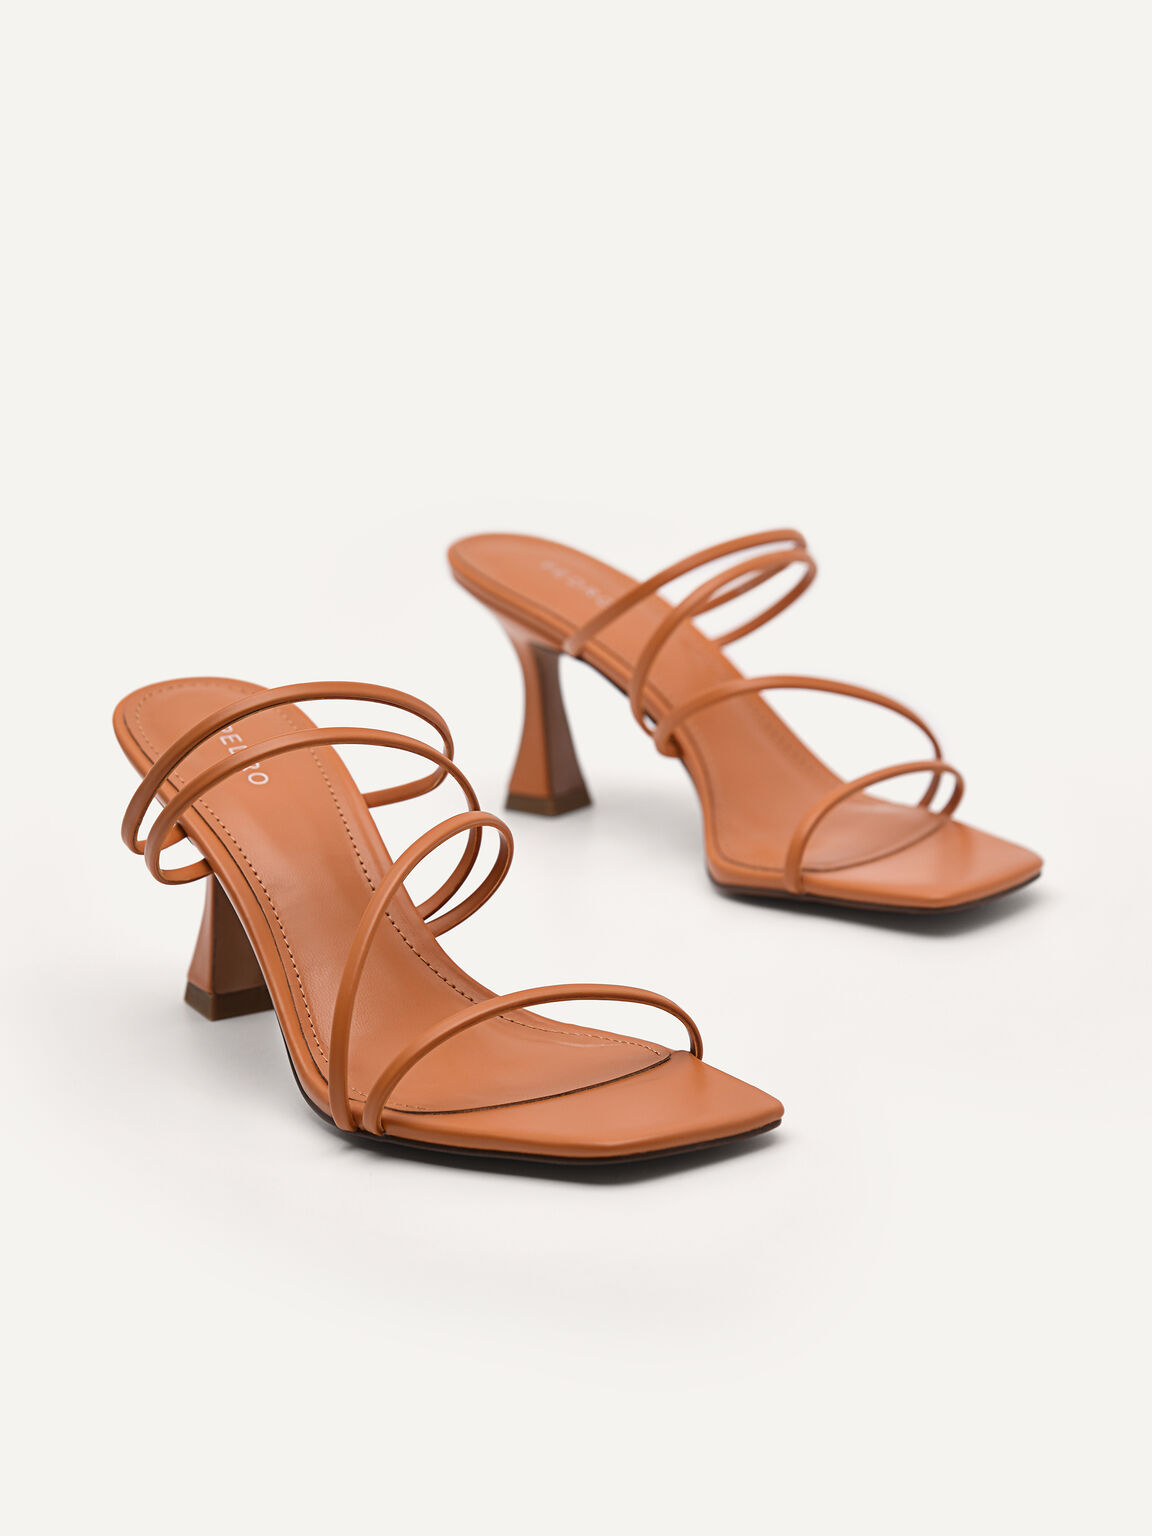 Strappy Heeled Sandals - Orange, Orange